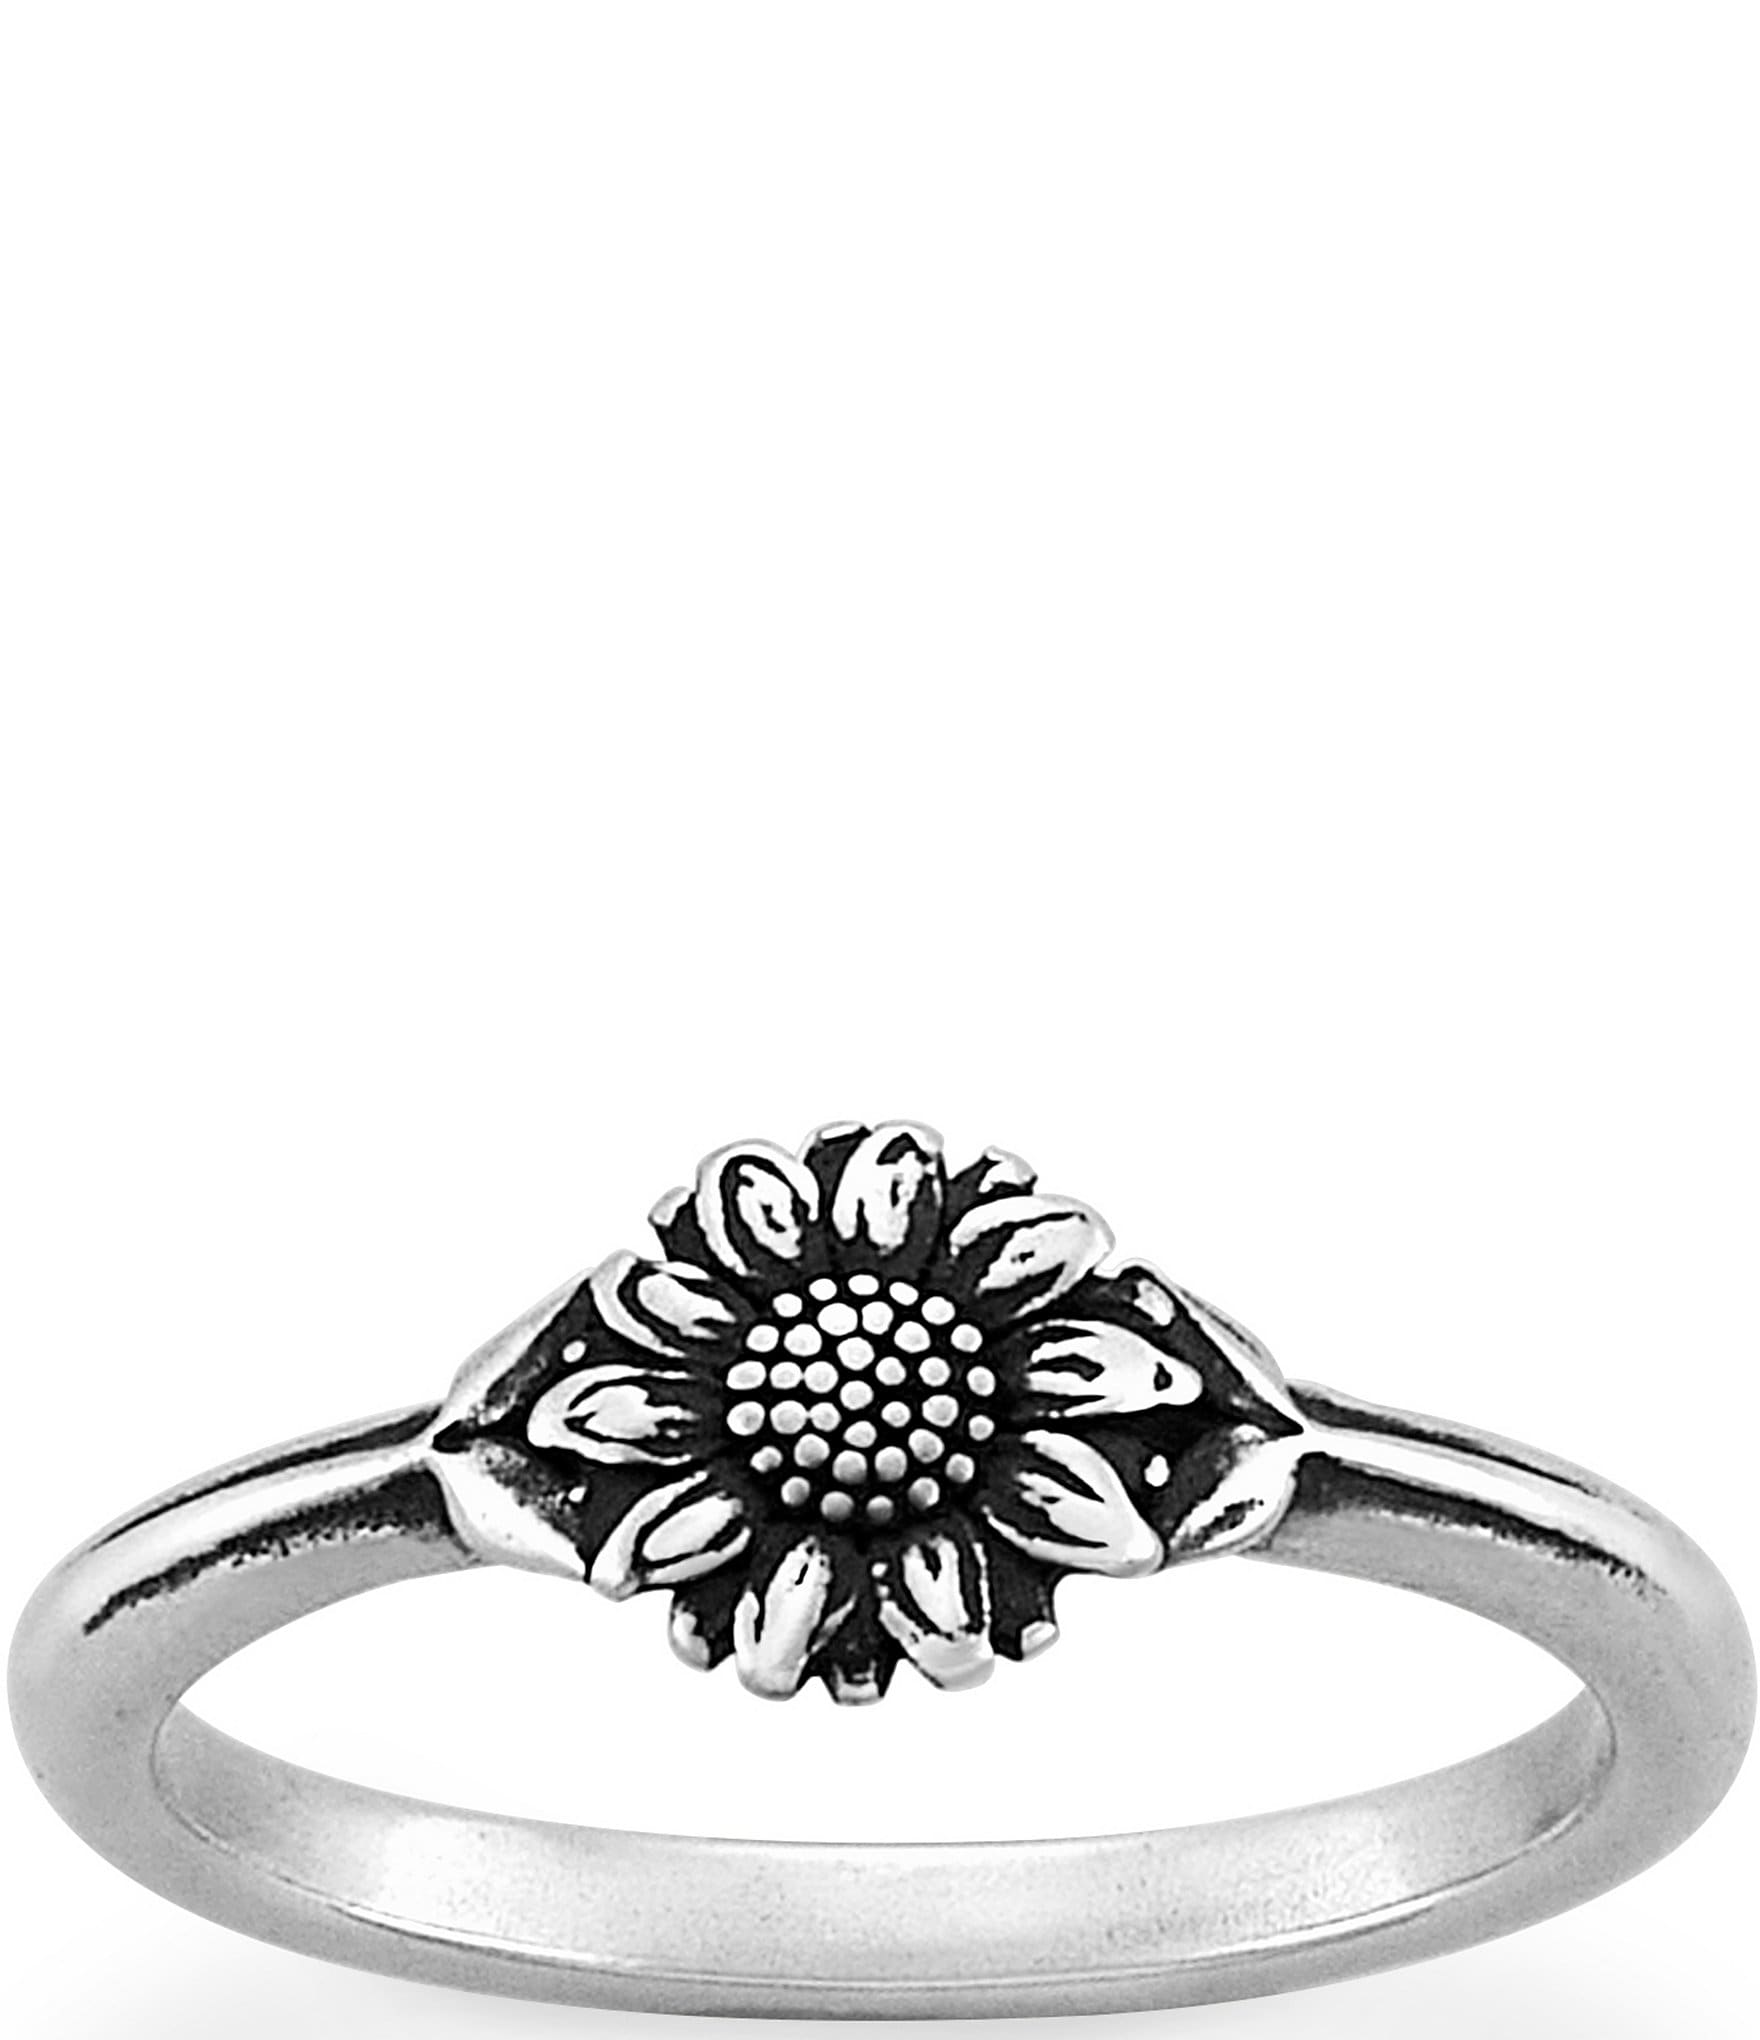 Buy Mini Daisy Ring for USD 58.00 | James Avery | Daisy ring, Rings, Jewelry